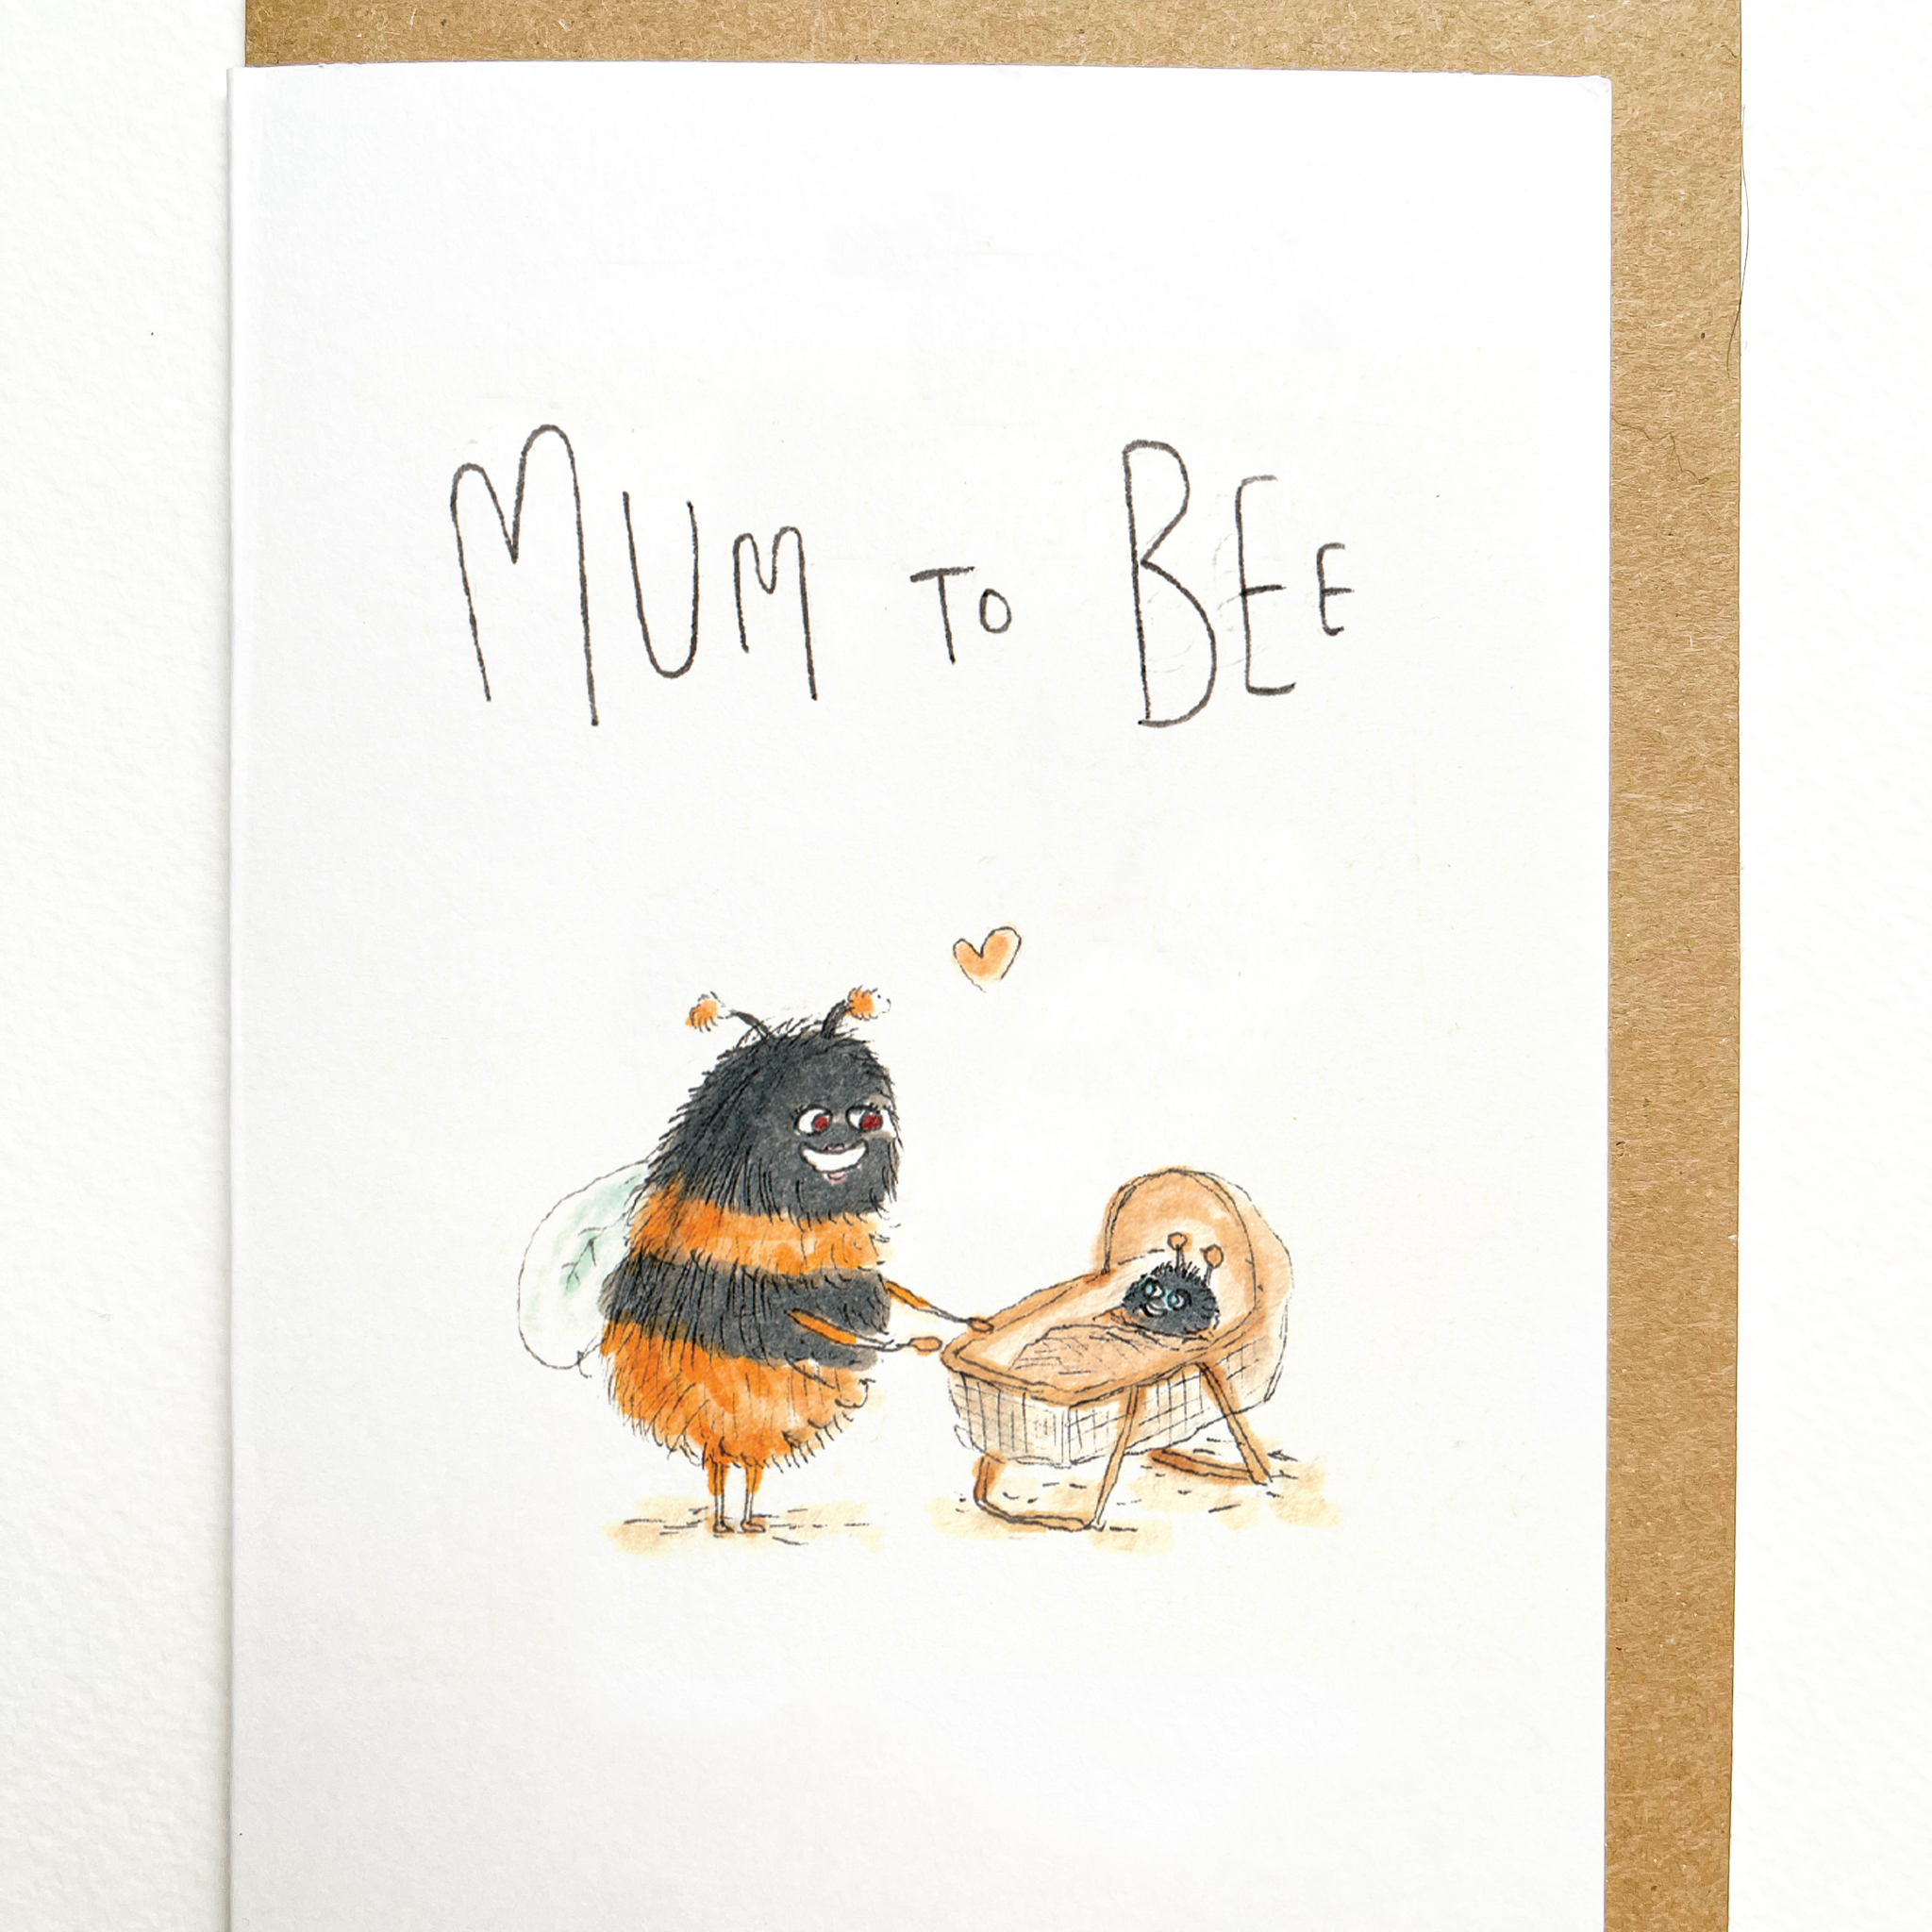 Mum To Bee